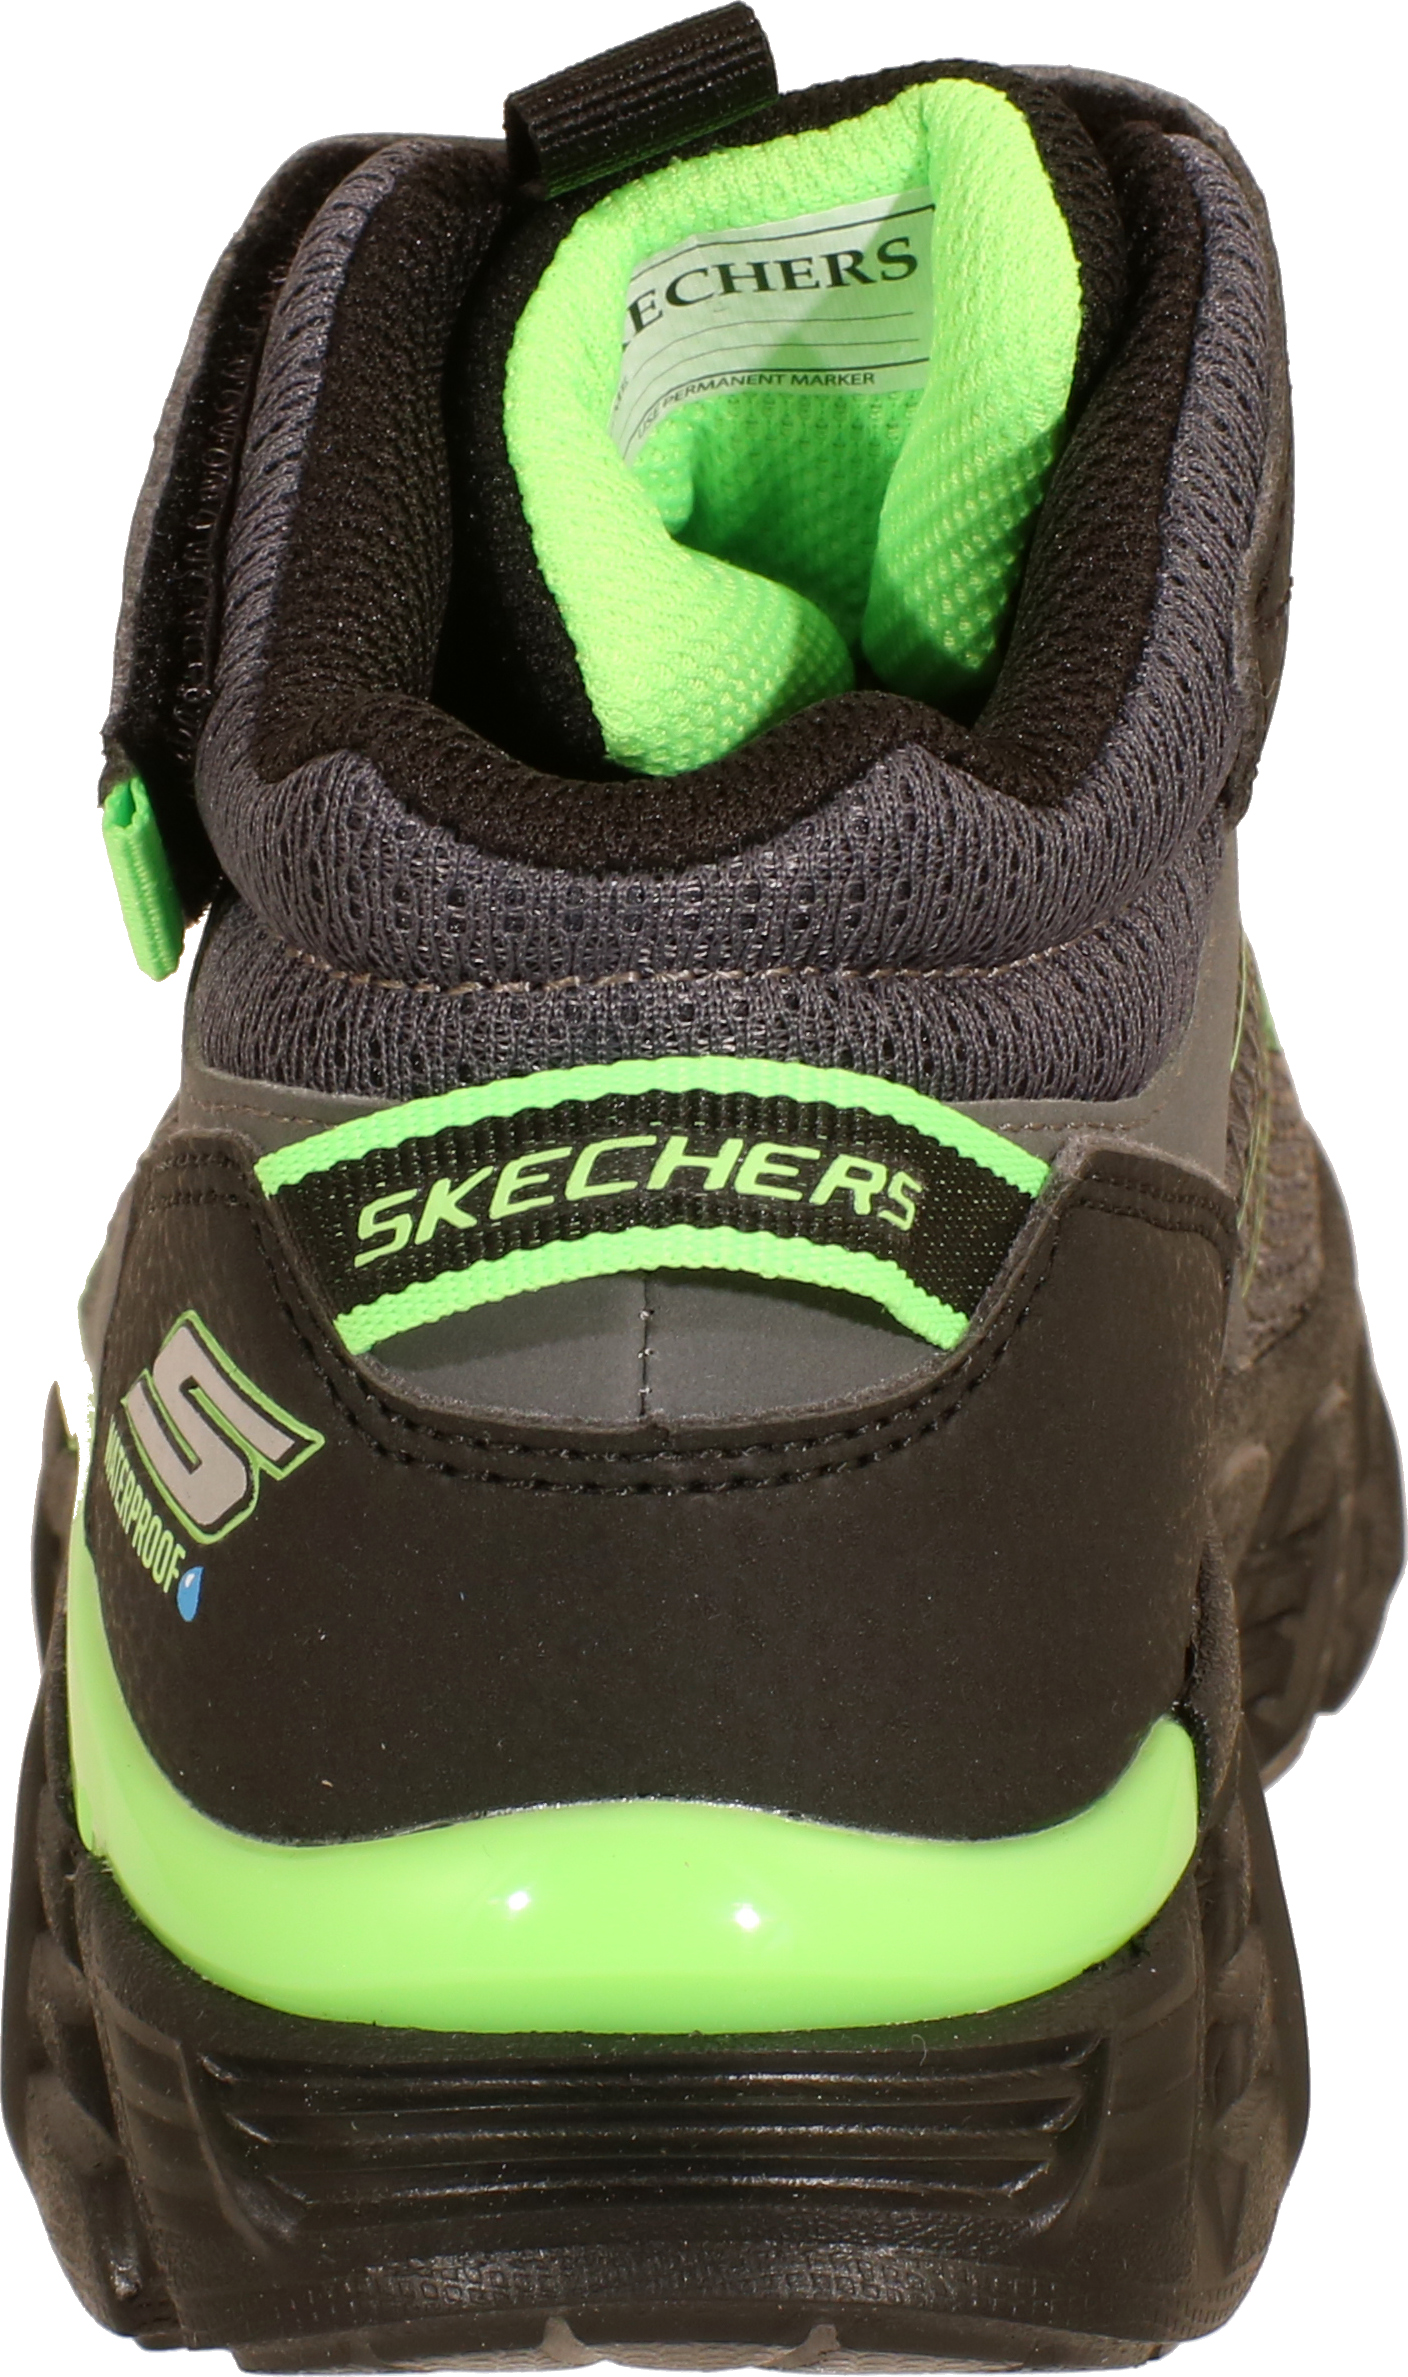 Skechers Tech-Grip - Charcoal / Schwarz / Limette Synthetik